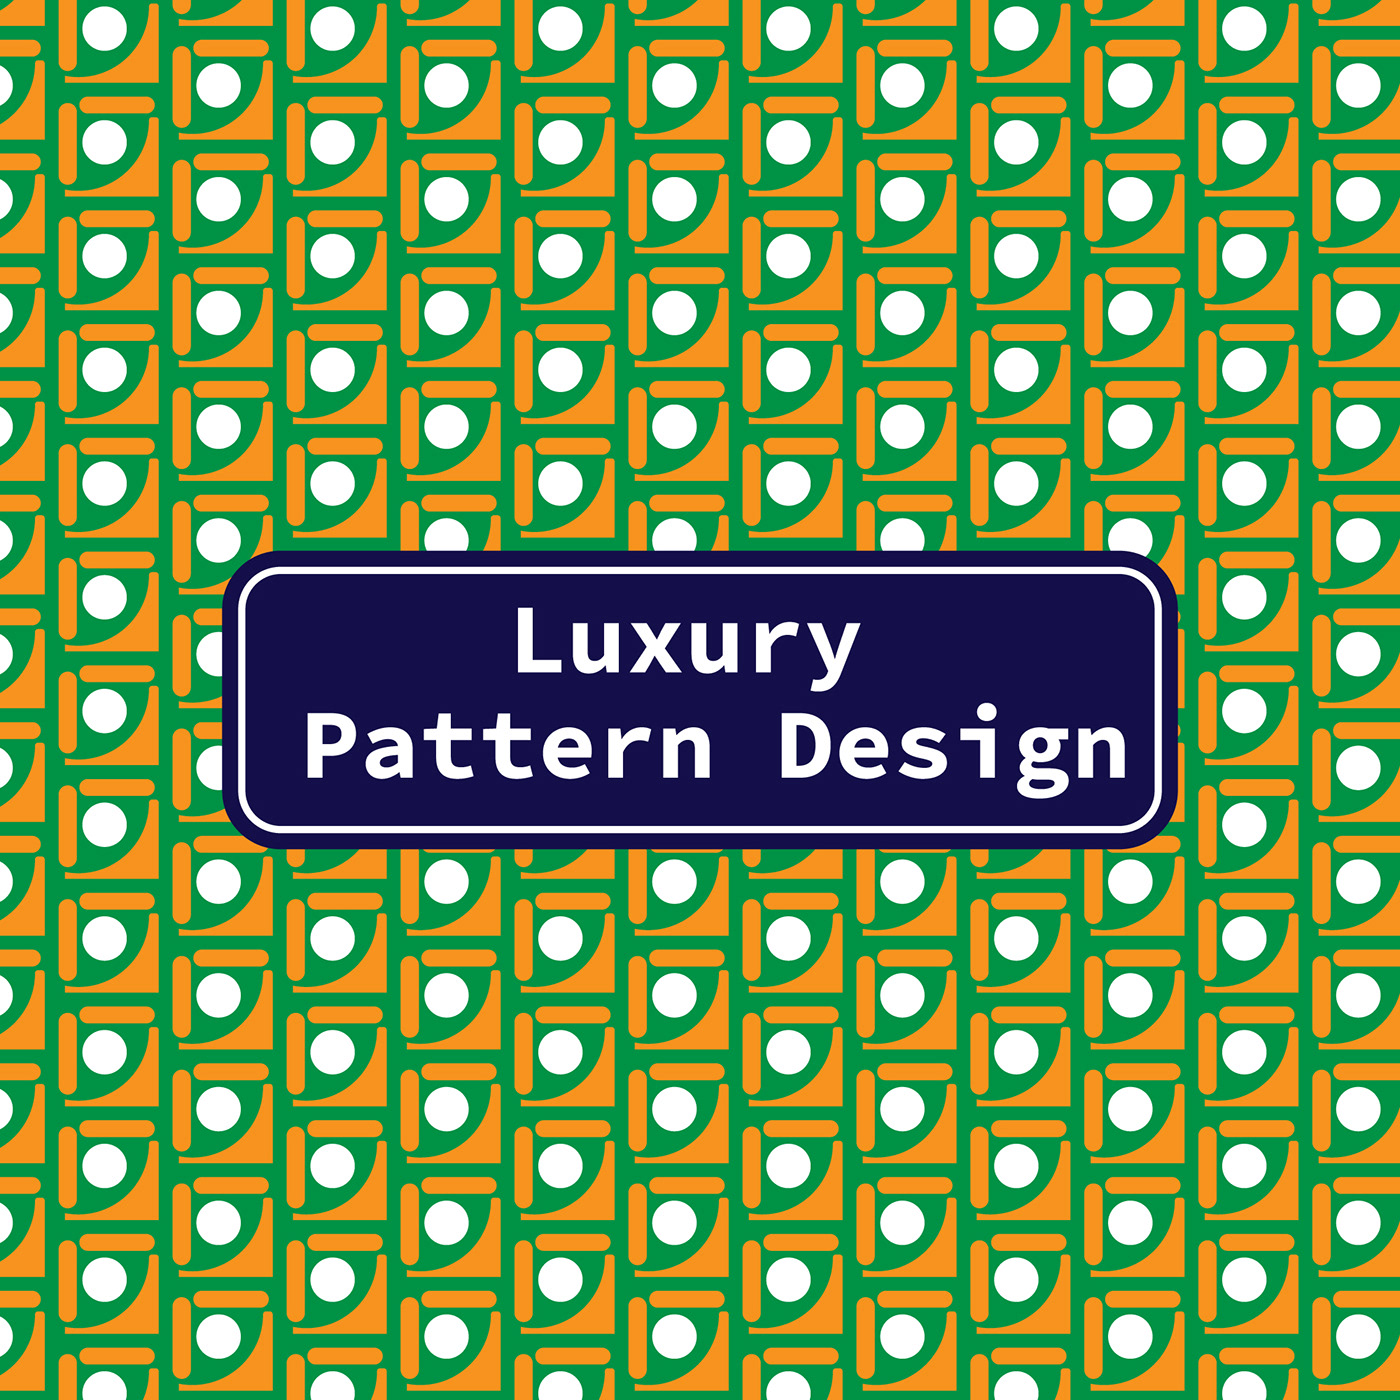 textile pattern design pattern design  pattern designs textile design  print LUXURY PATTERN DESIGN pattern designer pattern designing